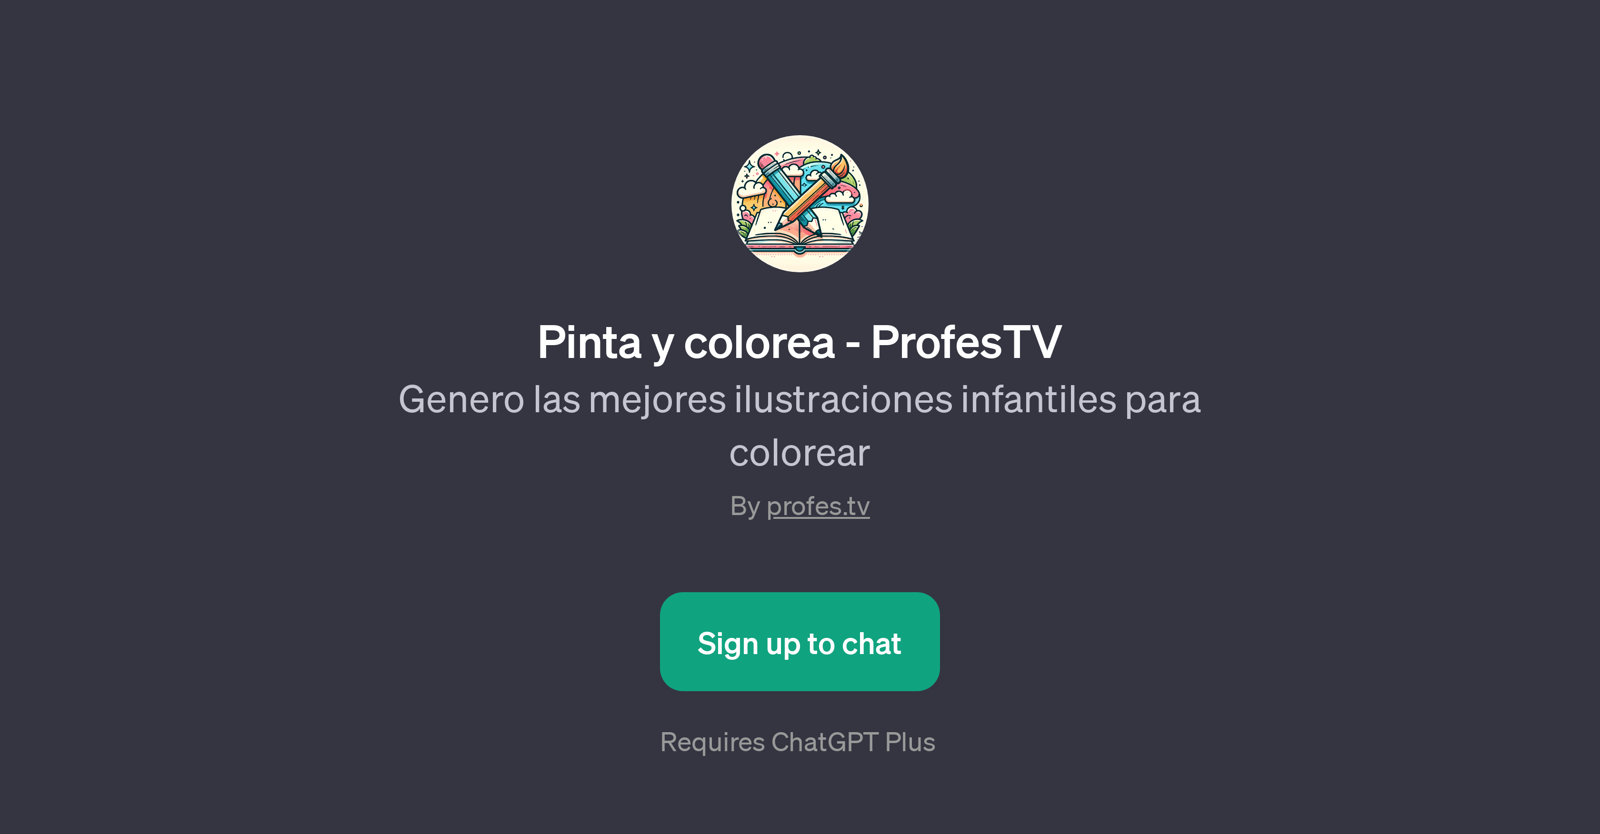 Pinta y colorea - ProfesTV website